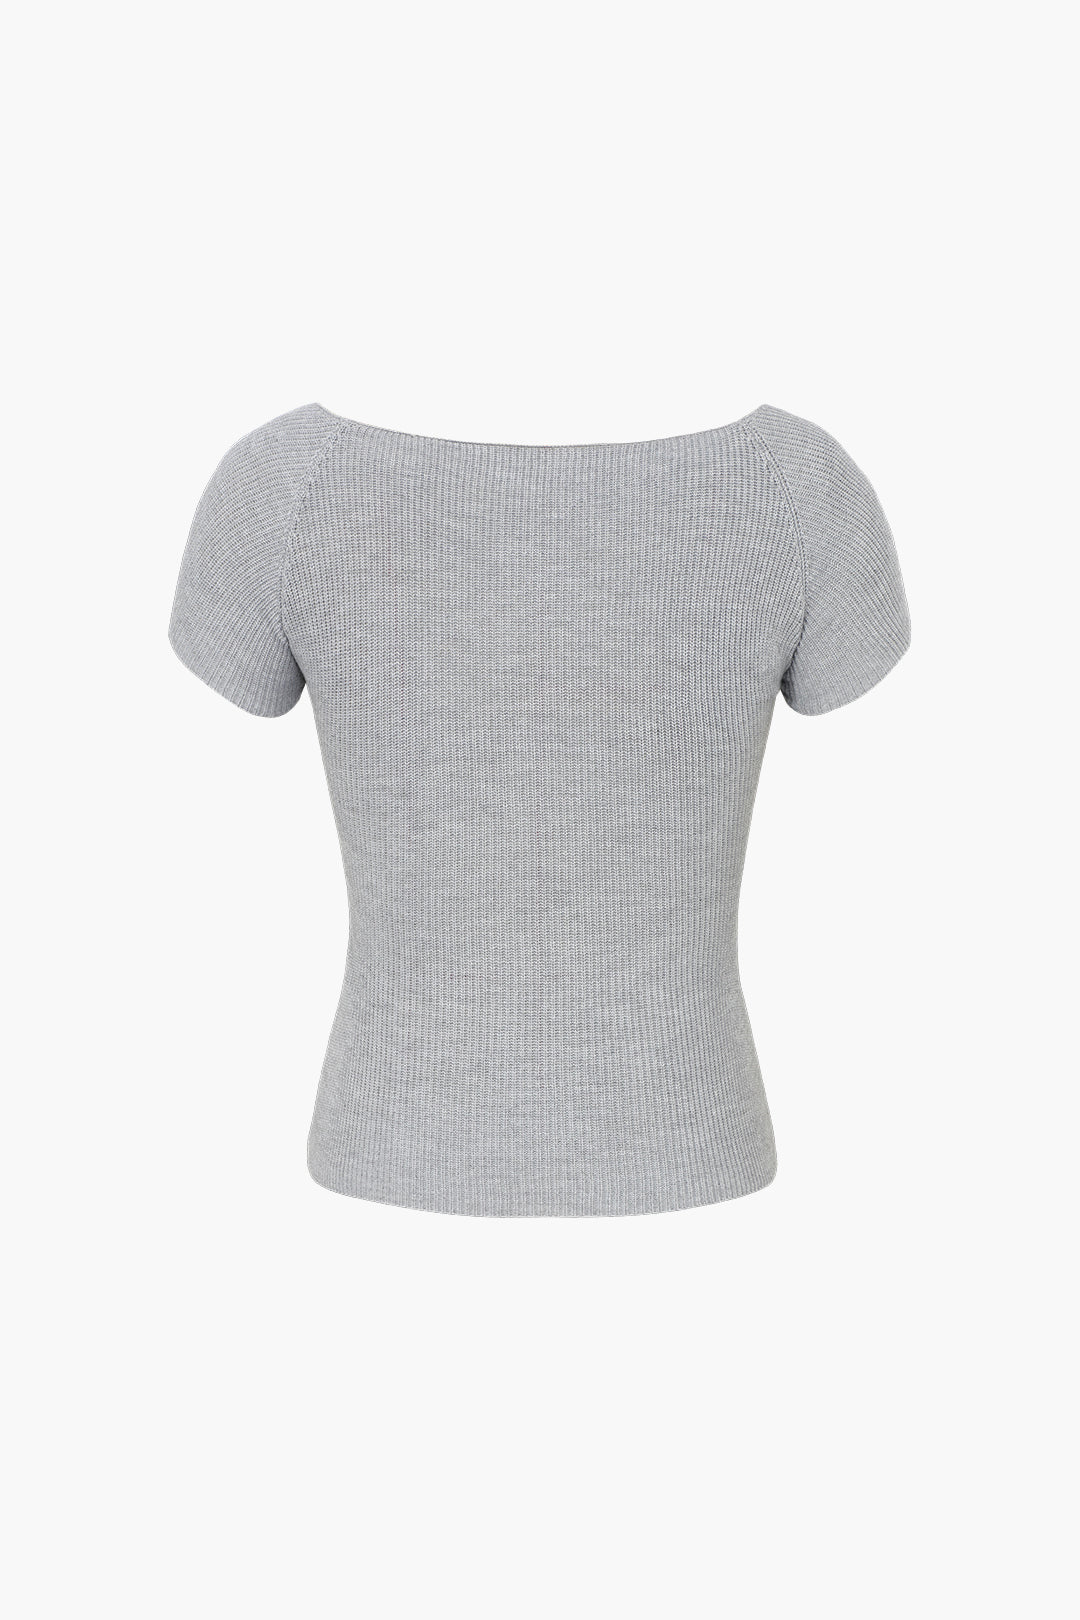 Basic Ribbed Square Neck Short Sleeve T-Shirt